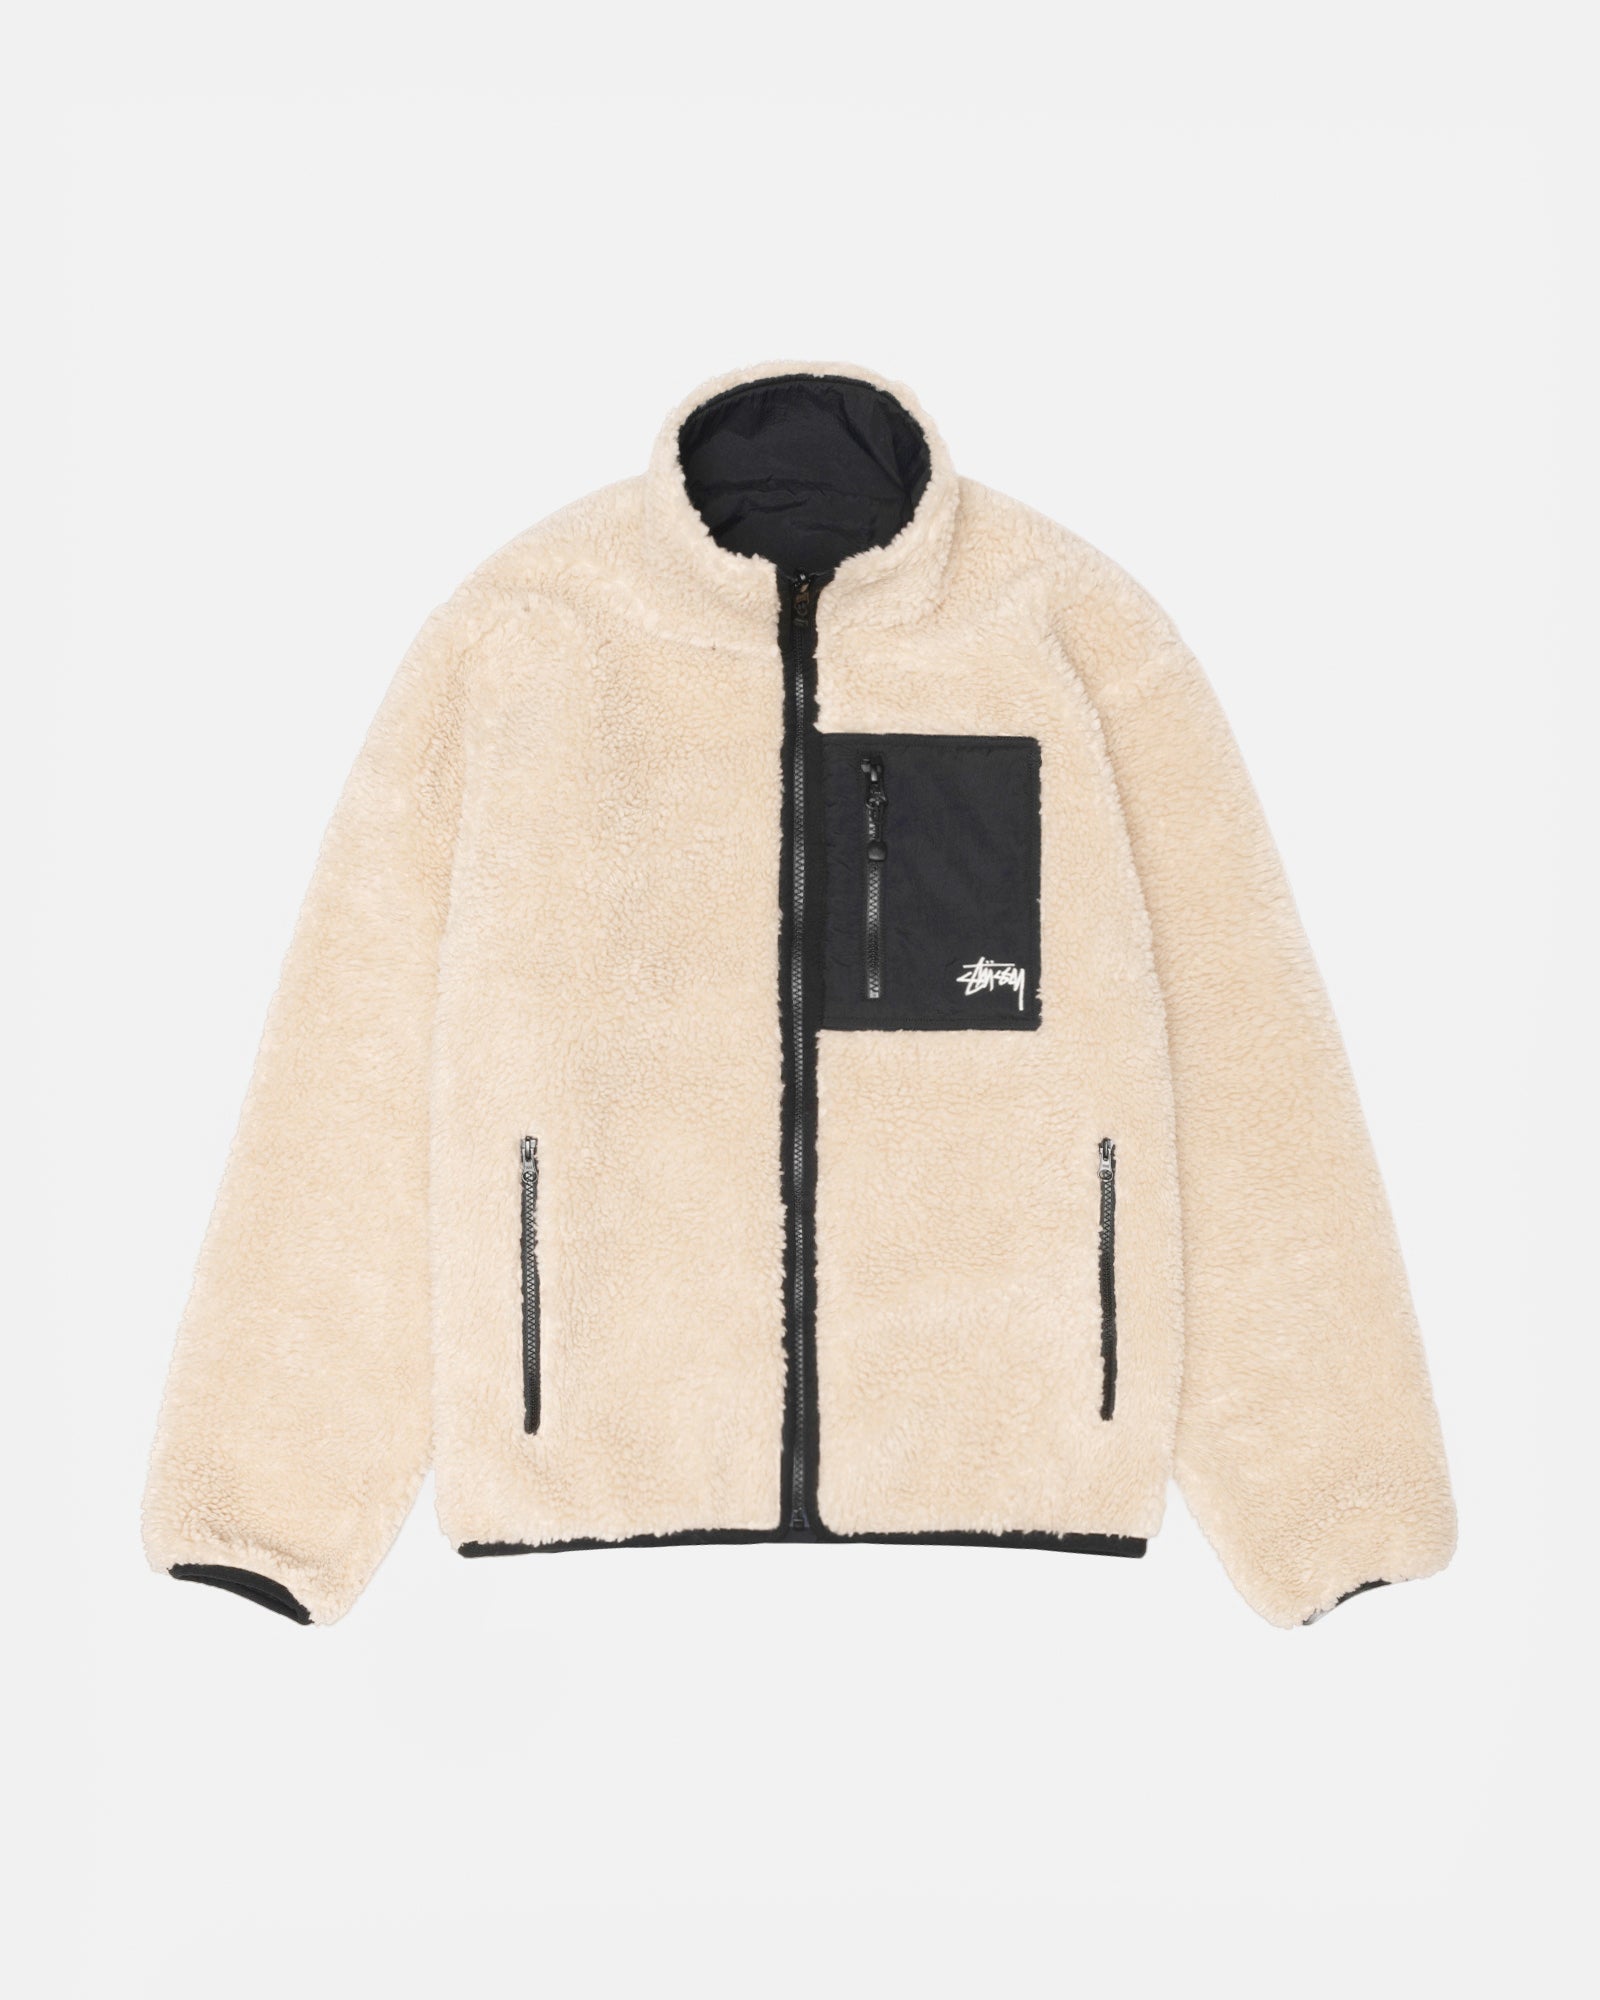 12,300円STUSSY  sherpa reversible jacket